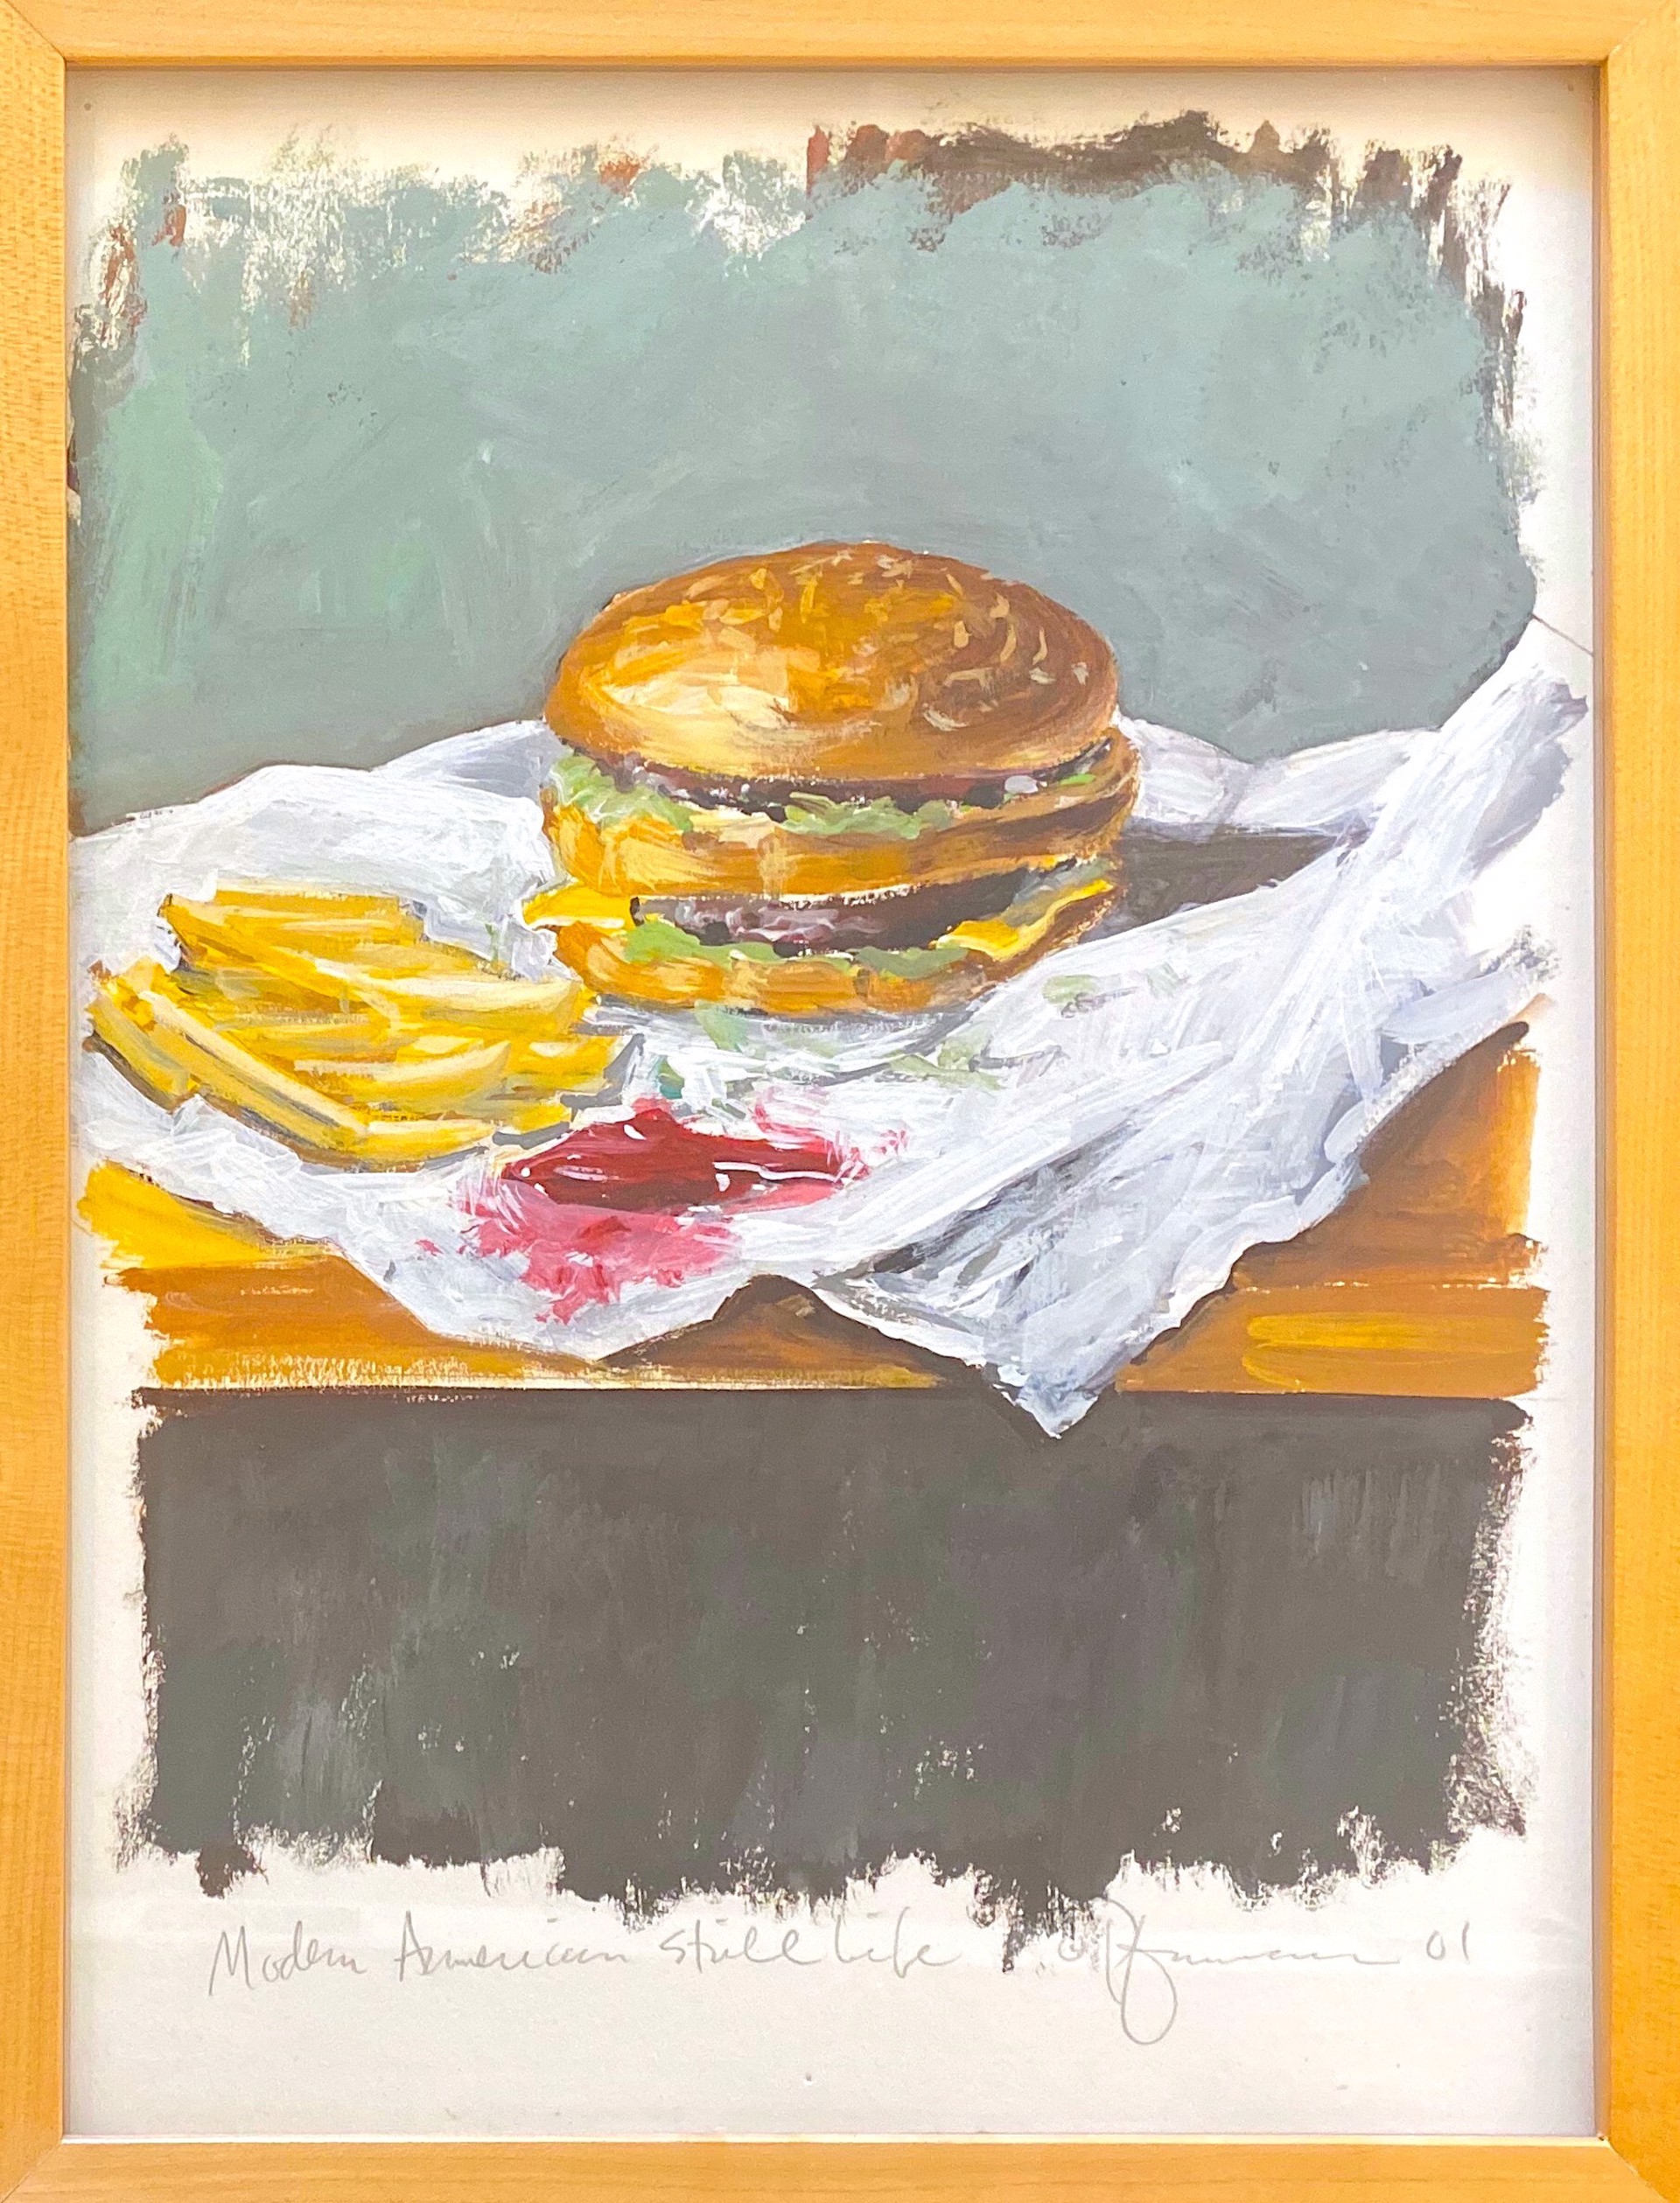 Big Mac by Tom Pfannerstill